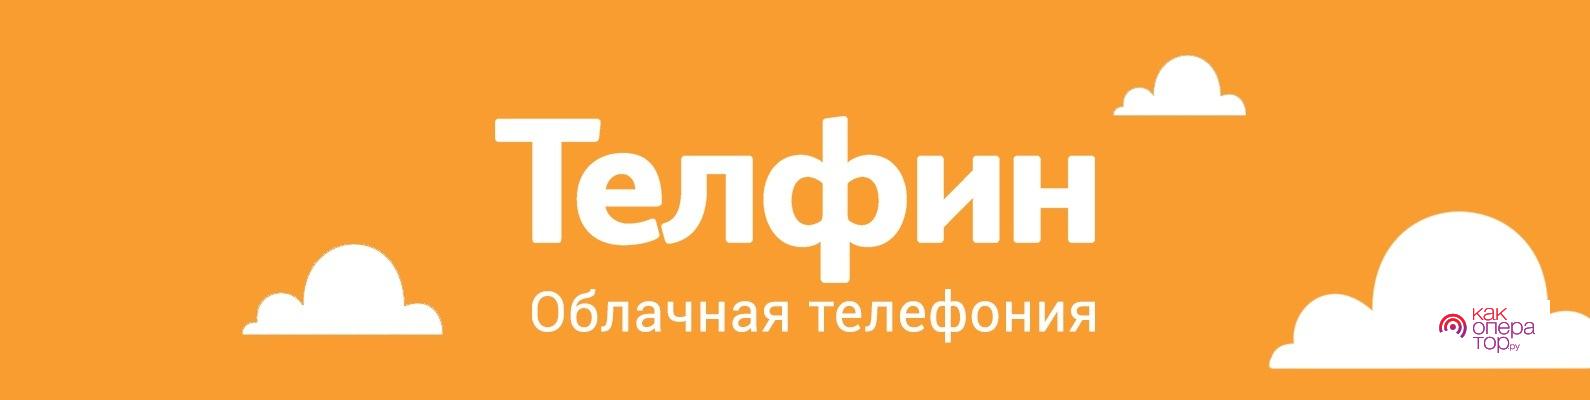 Телфин | Облачная телефония для бизнеса | ВКонтакте